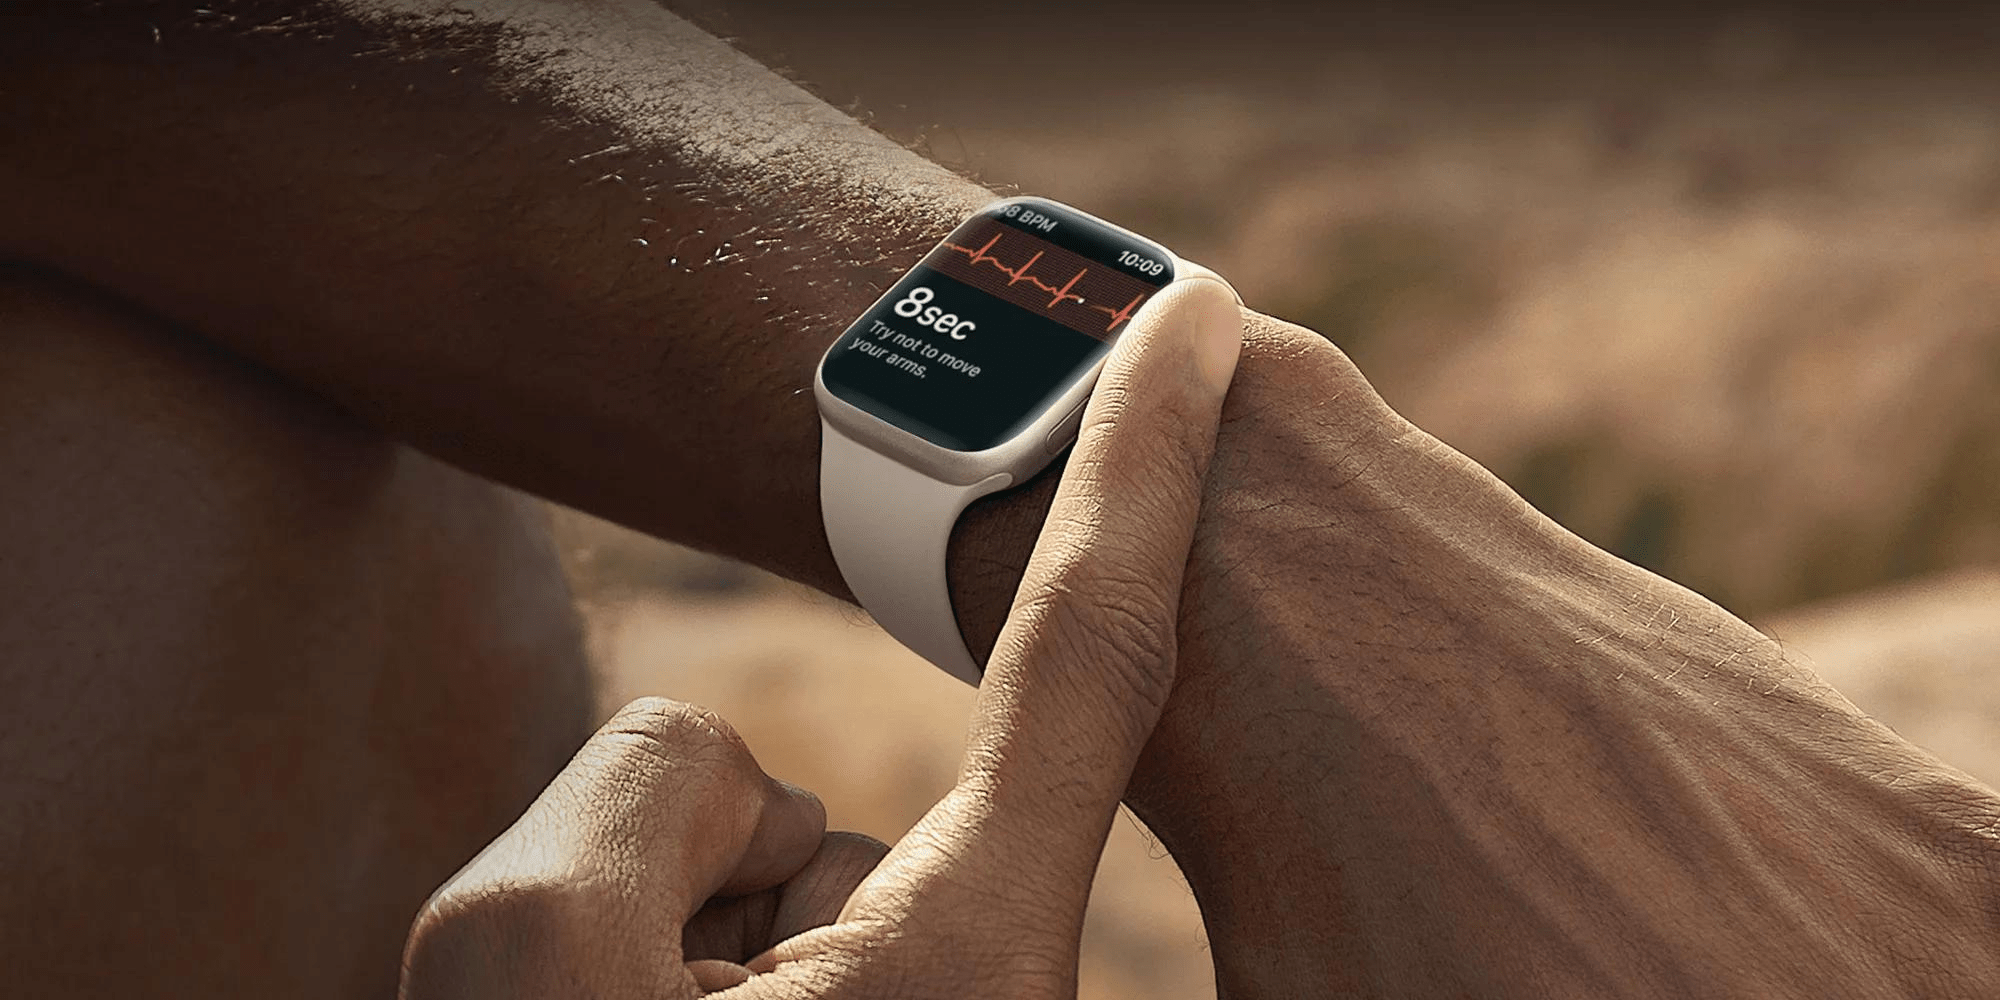 ساعة Apple Watch Pro تحصل على تصميم جديد وشاشة أكبر